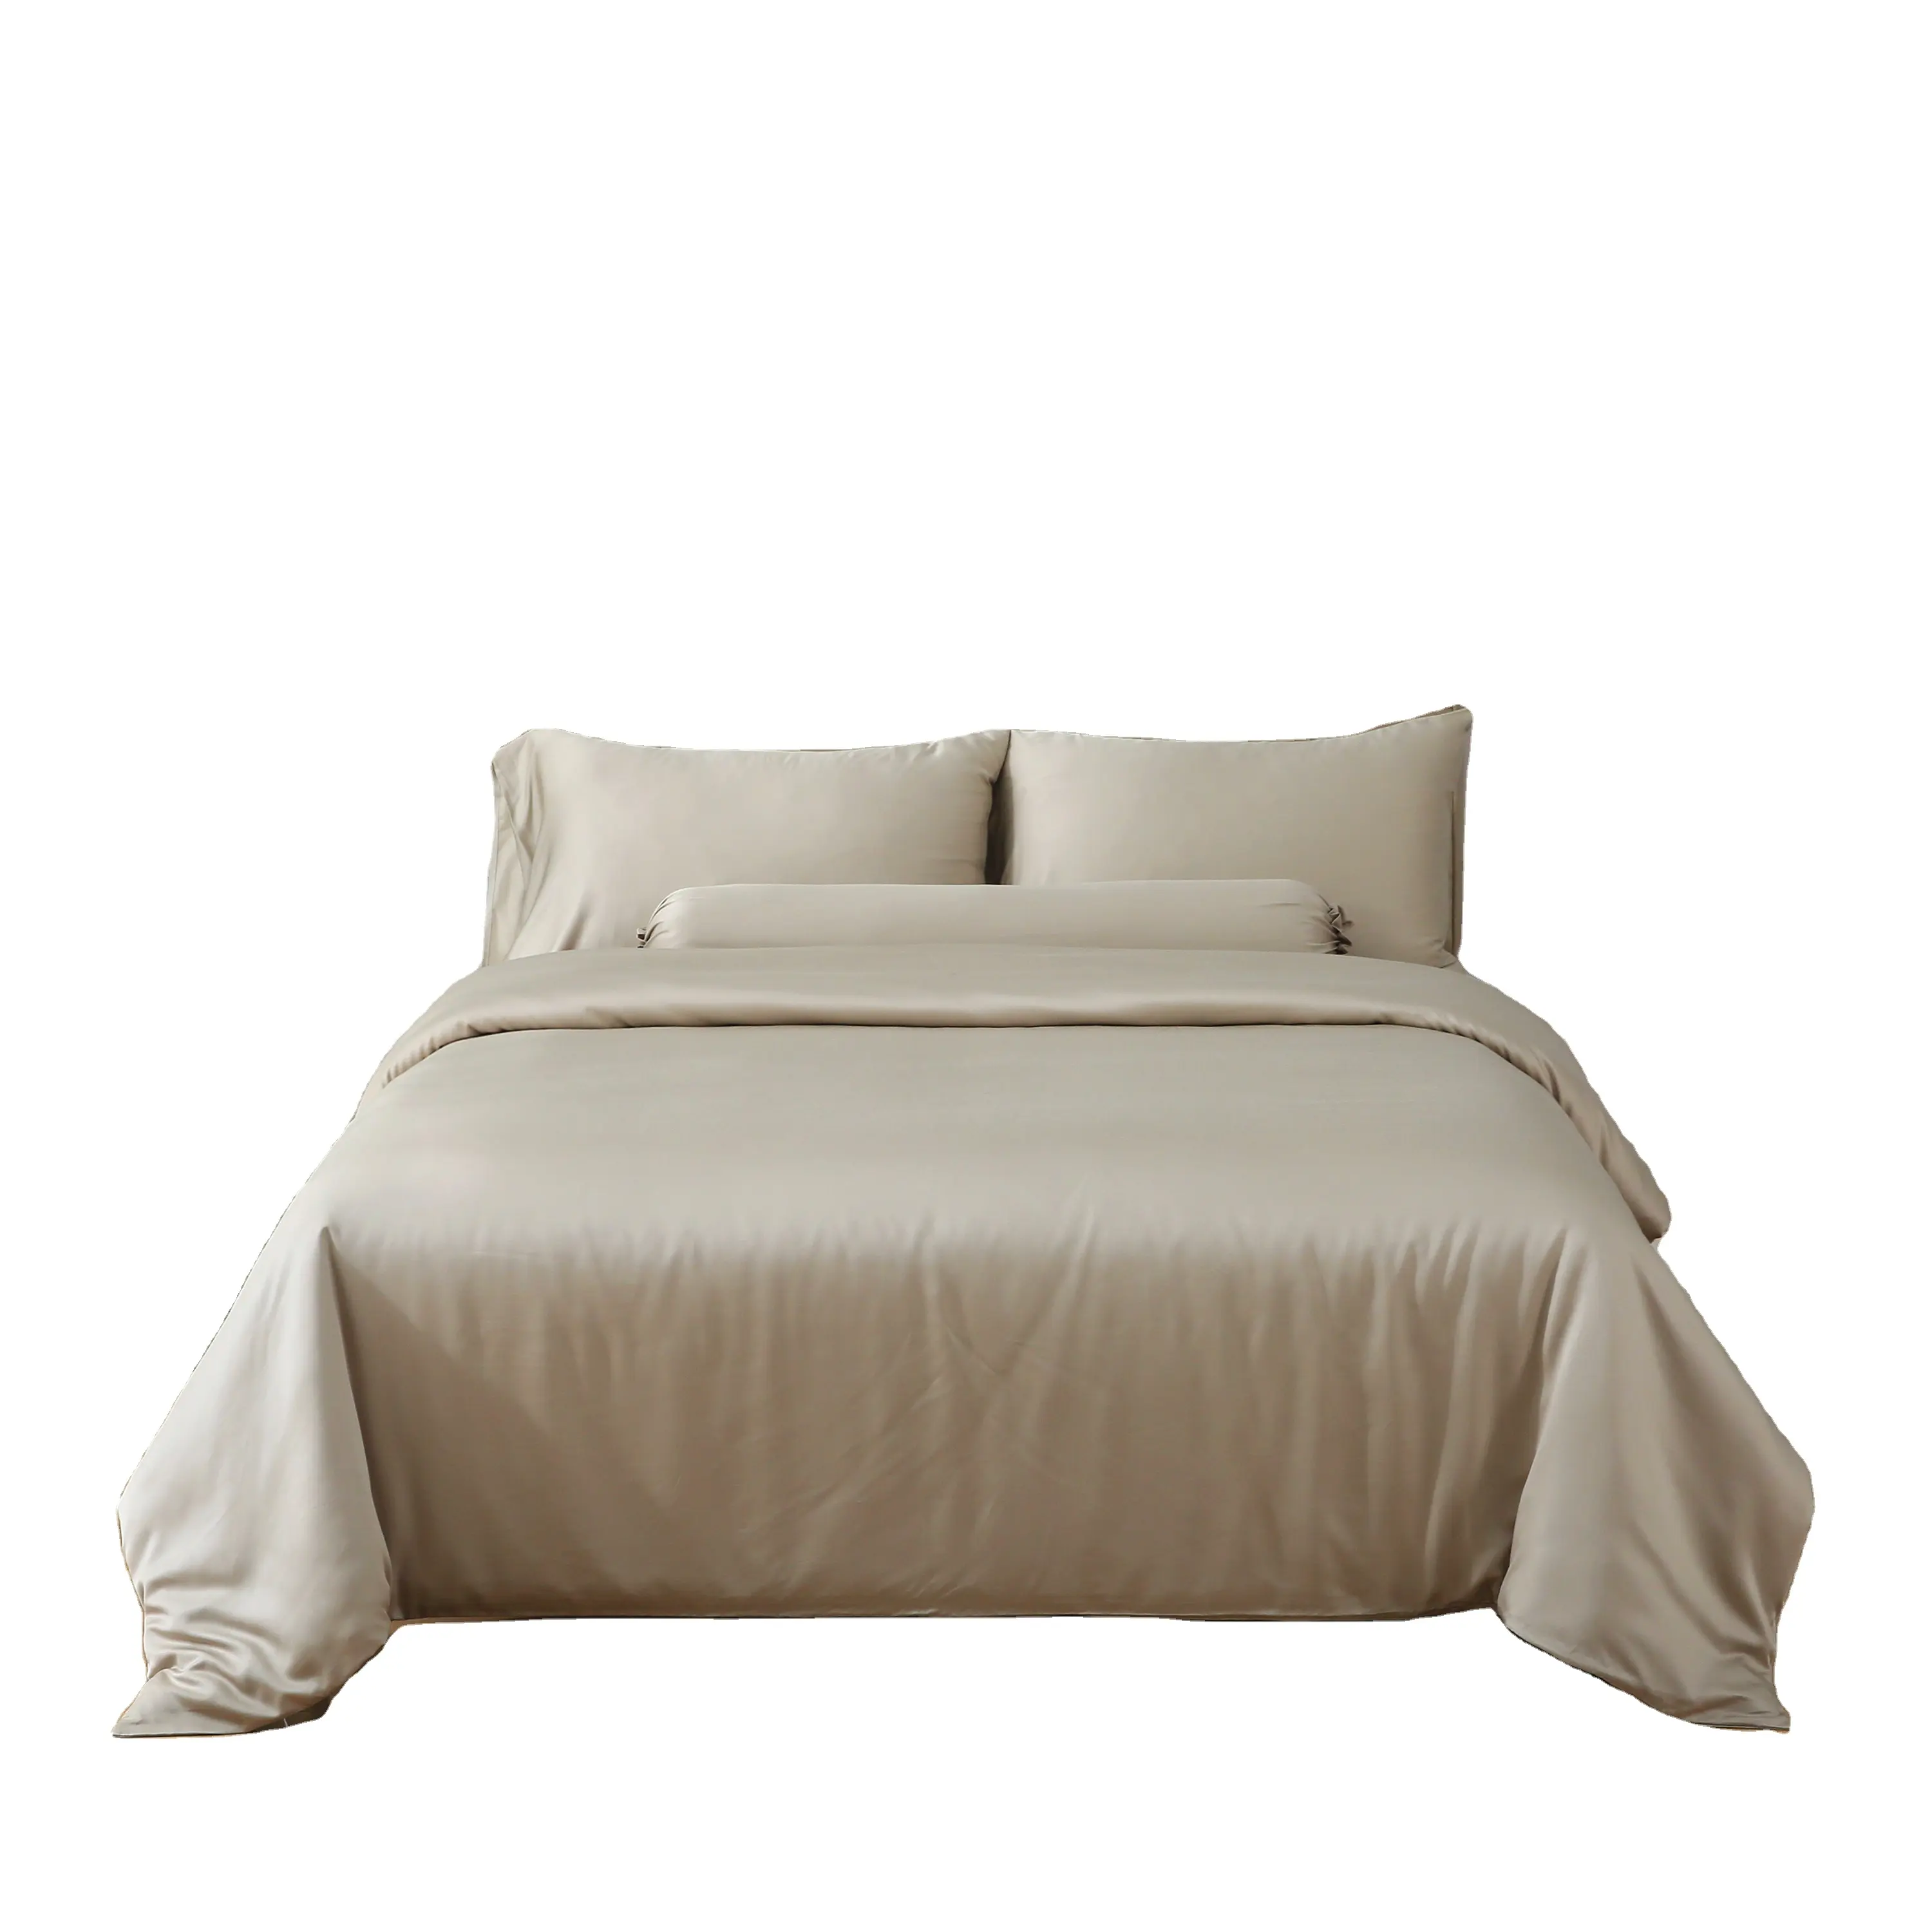 Juego de cama de tejido de satén teñido liso de bambú orgánico Juego de sábanas de bambú 173*120 Juego de cama